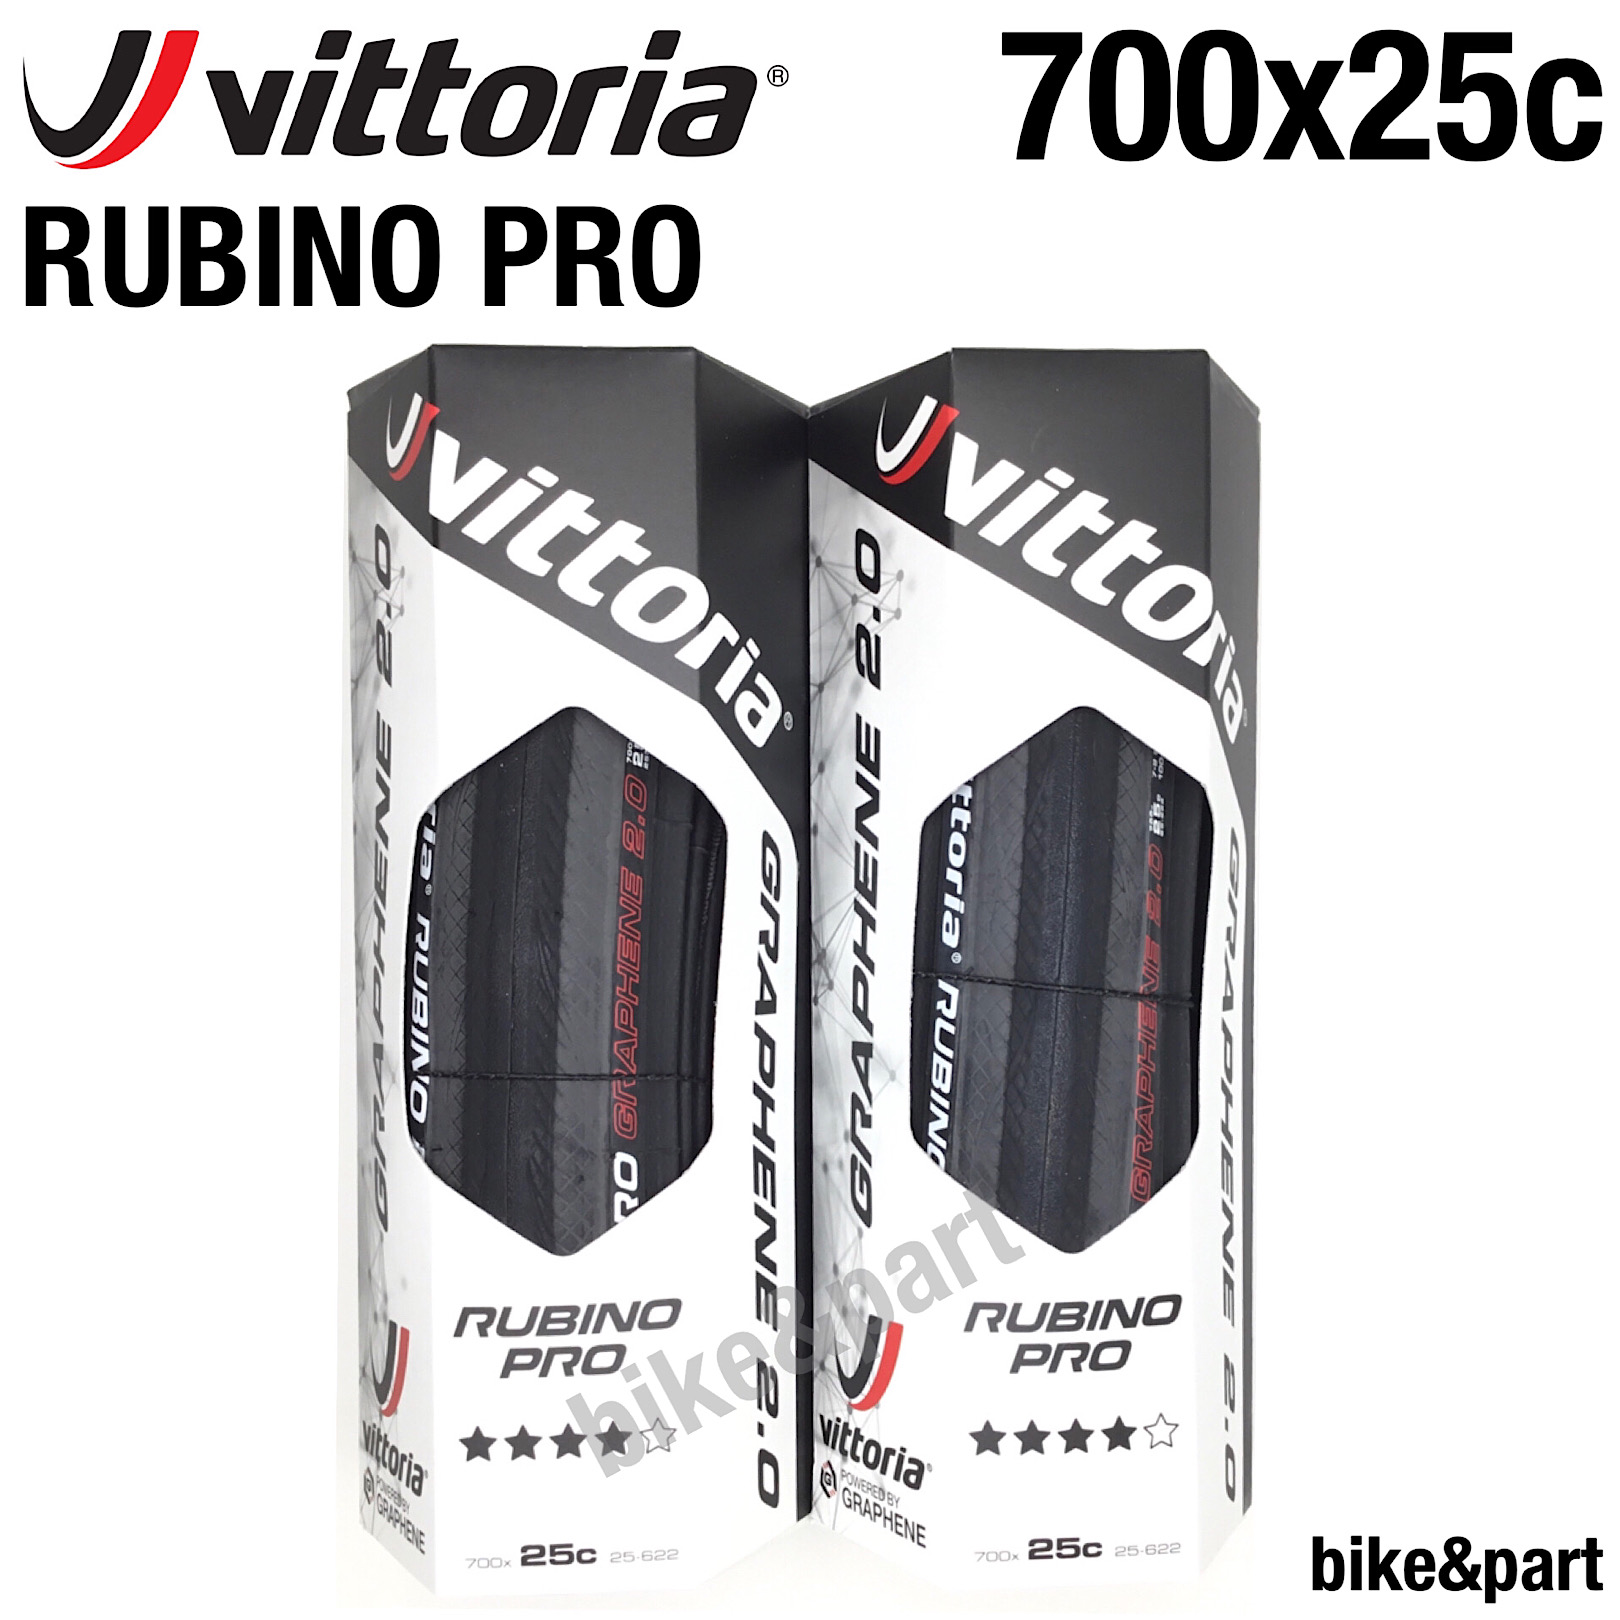 มุมมองเพิ่มเติมของสินค้า ยางนอกเสือหมอบ Vittoria R Pro G2.0 700x25c / 2เส้น (แถมยางใน 2เส้น)